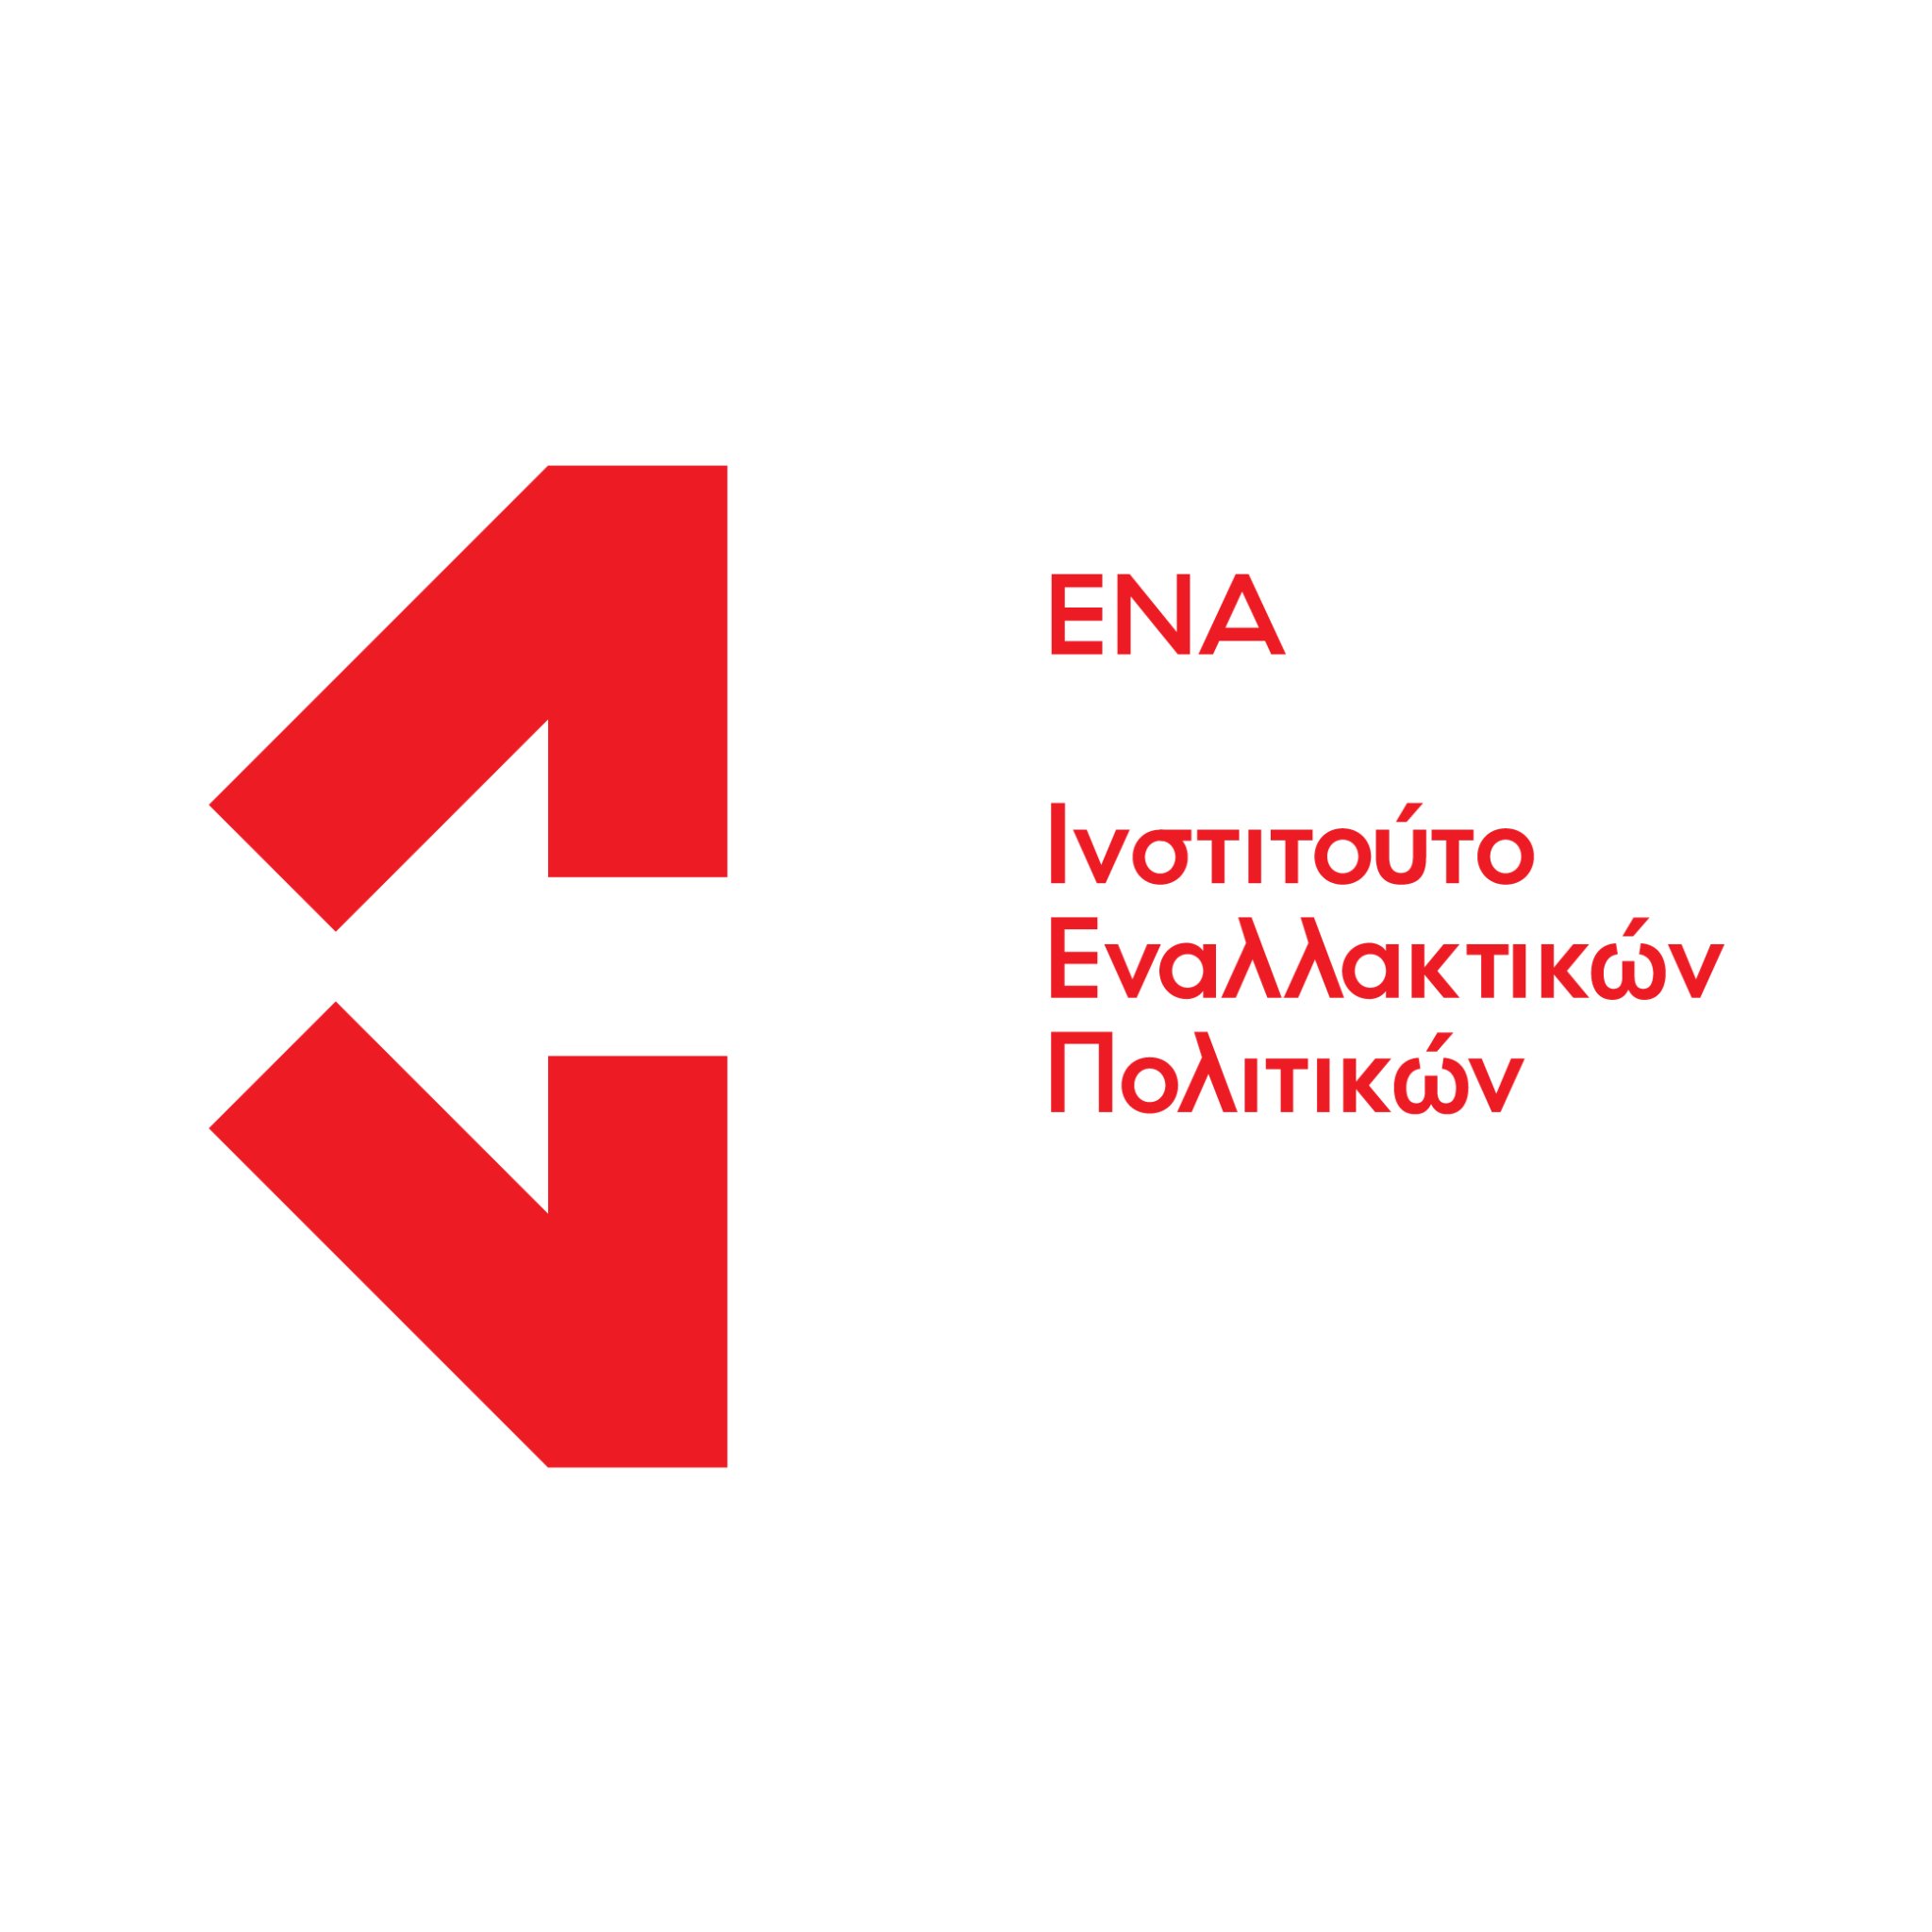 Ινστιτούτο Εναλλακτικών Πολιτικών ΕΝΑ | ENA Institute for Alternative Policies

info@enainstitute.org